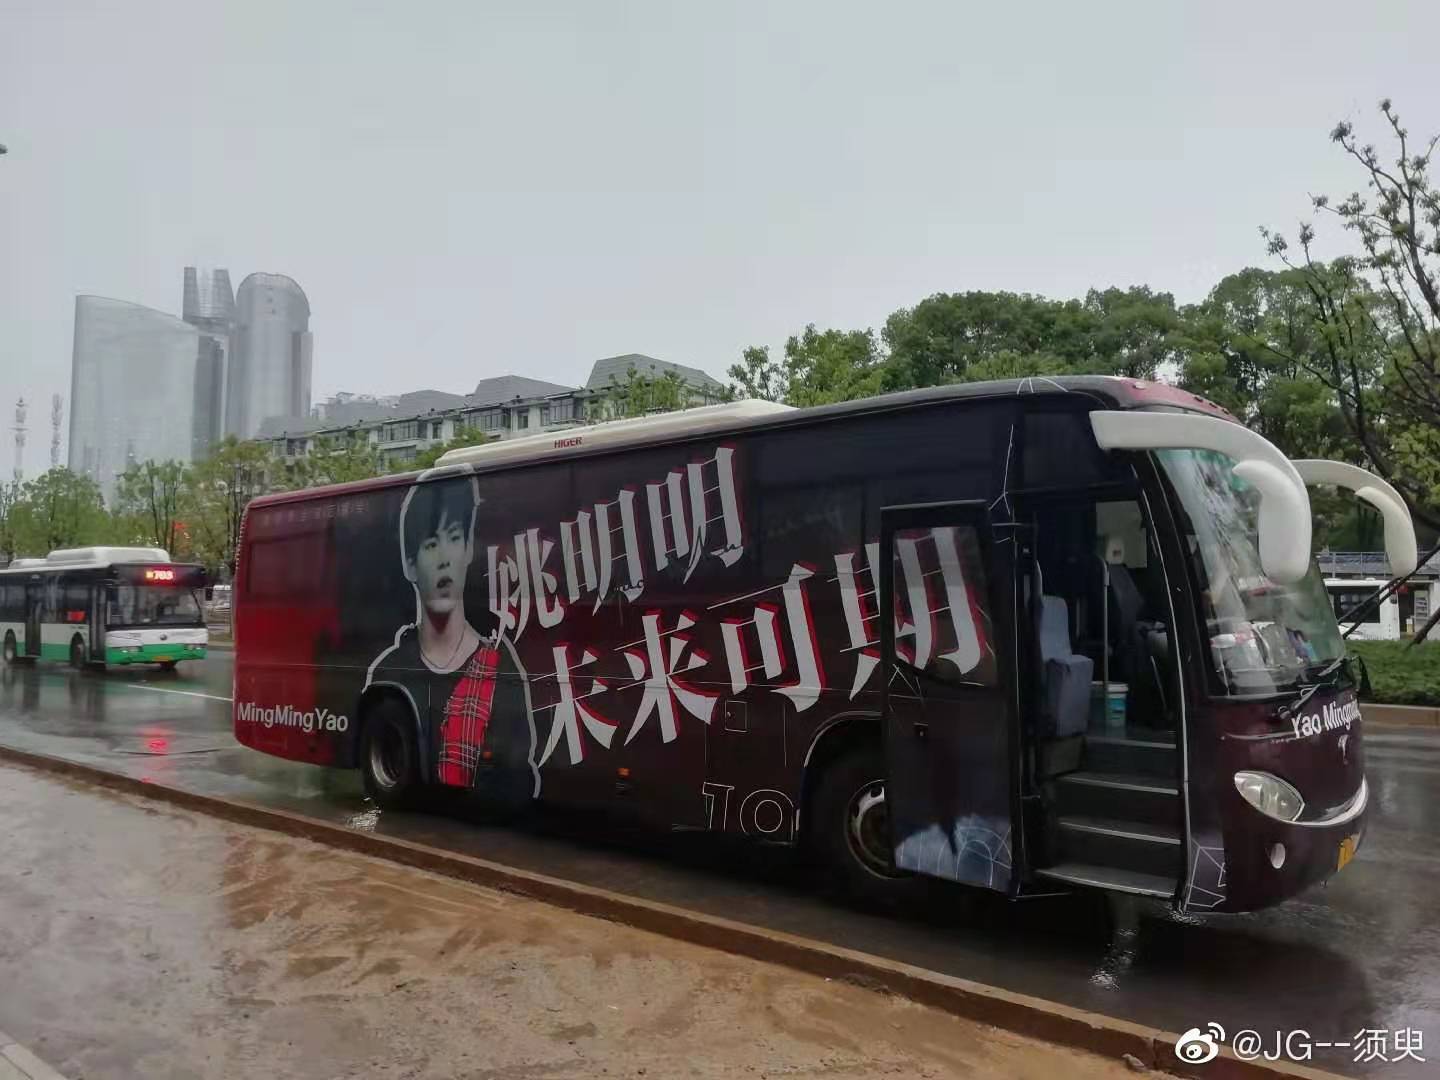 江苏刷墙广告 江苏社区道闸广告 江苏大巴车广告制作发布